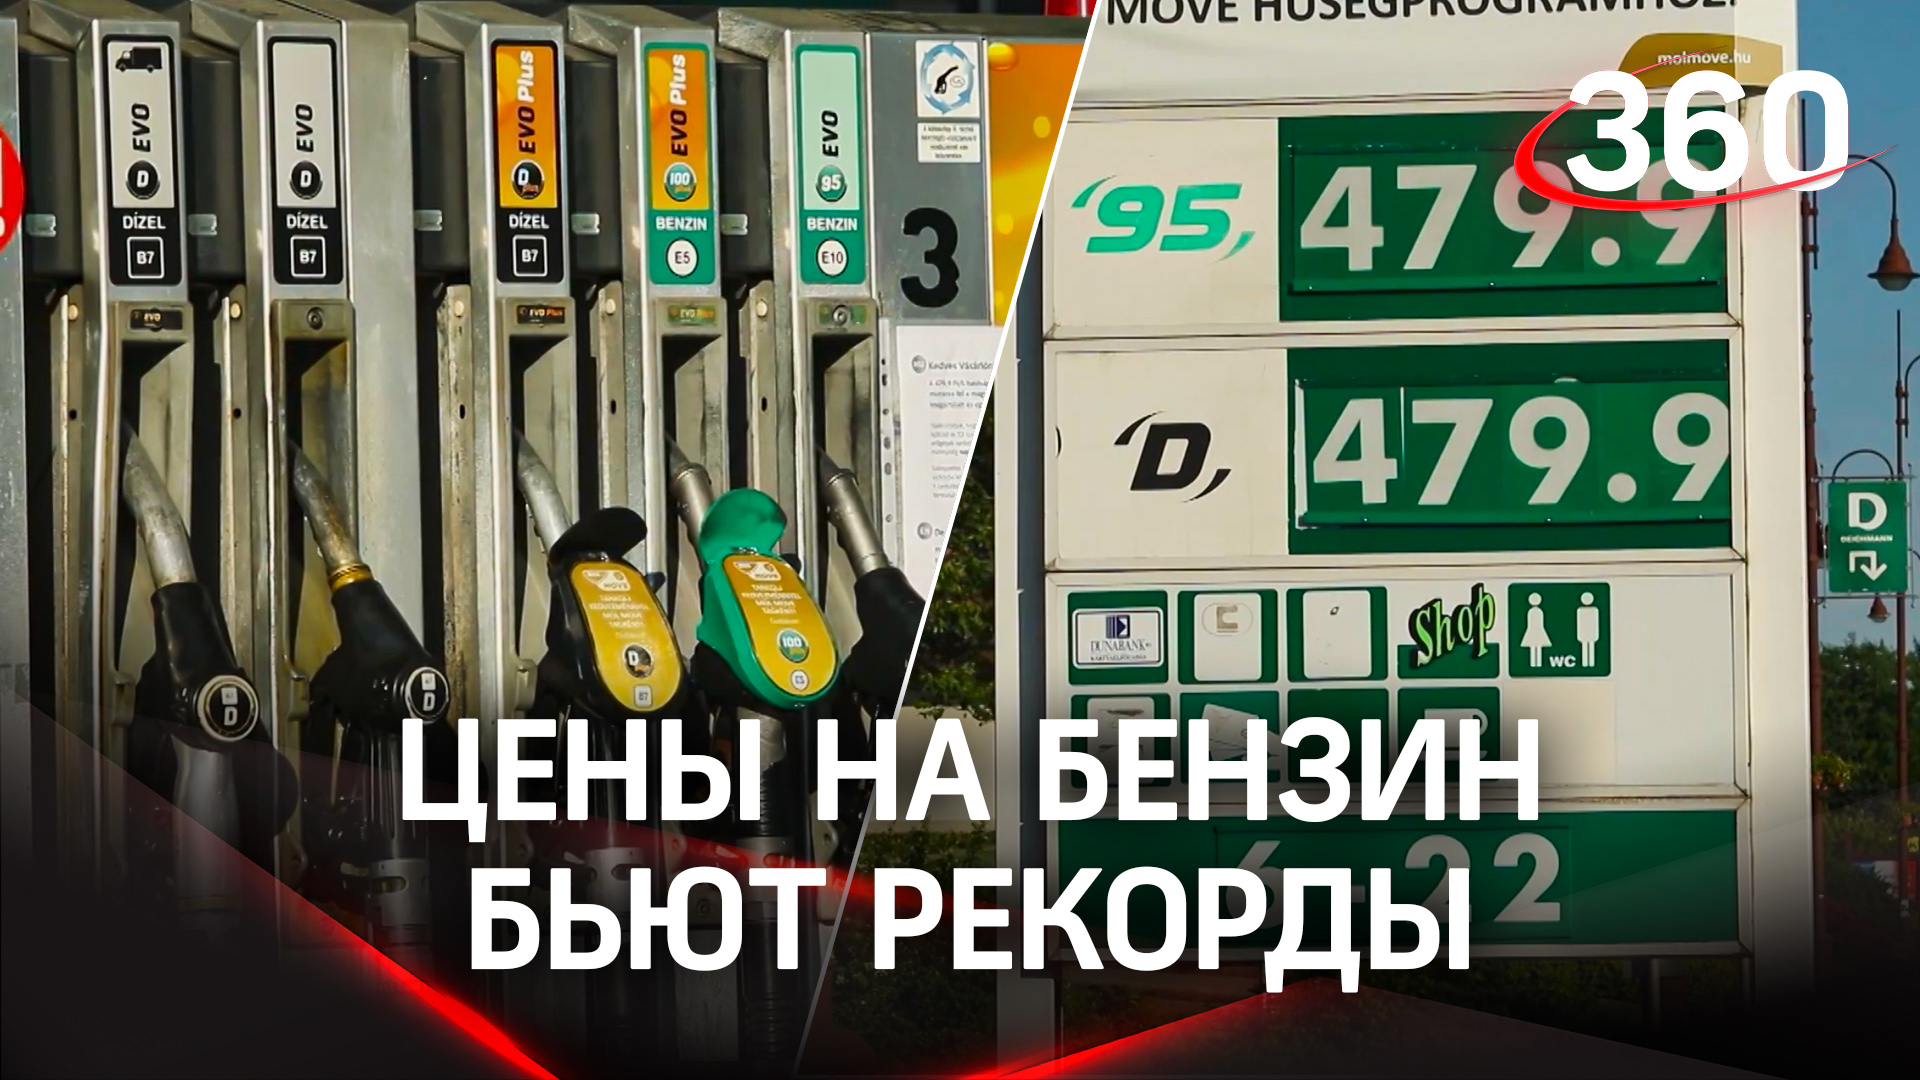 Бензин дороже денег: на Западе цены на бензин бьют рекорды